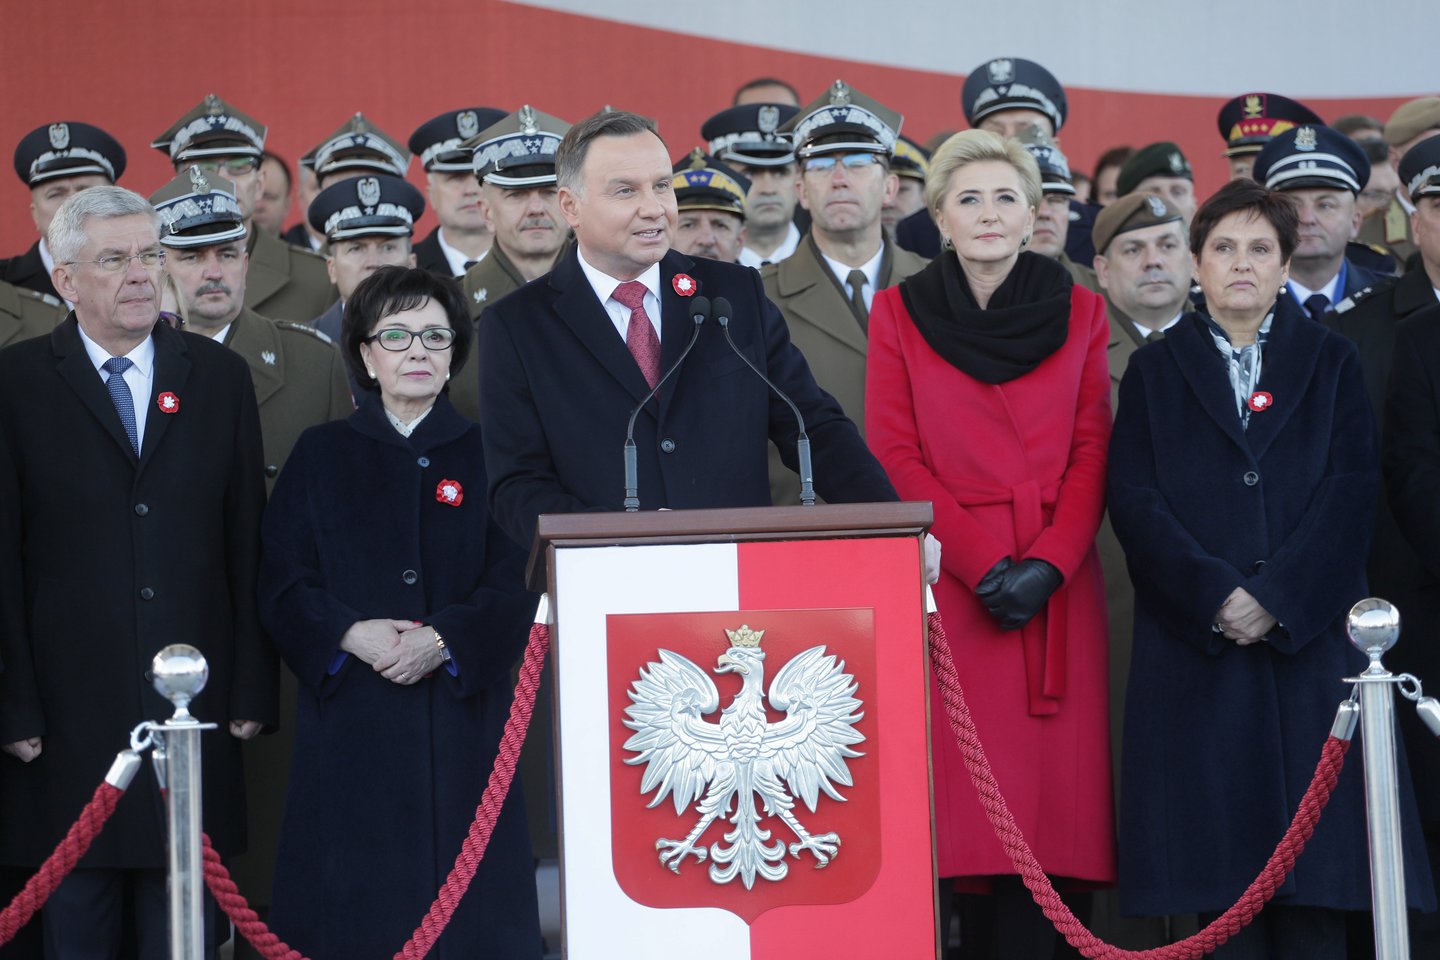  Lenkijos prezidentas ir kiti pareigūnai pirmadienį dalyvauja vainikų padėjimo ceremonijose ir kituose patriotiniuose renginiuose, šaliai minint Nepriklausomybės dieną – šventę, kurią pastaraisiais metais temdė ultradešiniųjų nacionalistų organizuojamos eitynės.<br> Reuters/Scanpix nuotr.